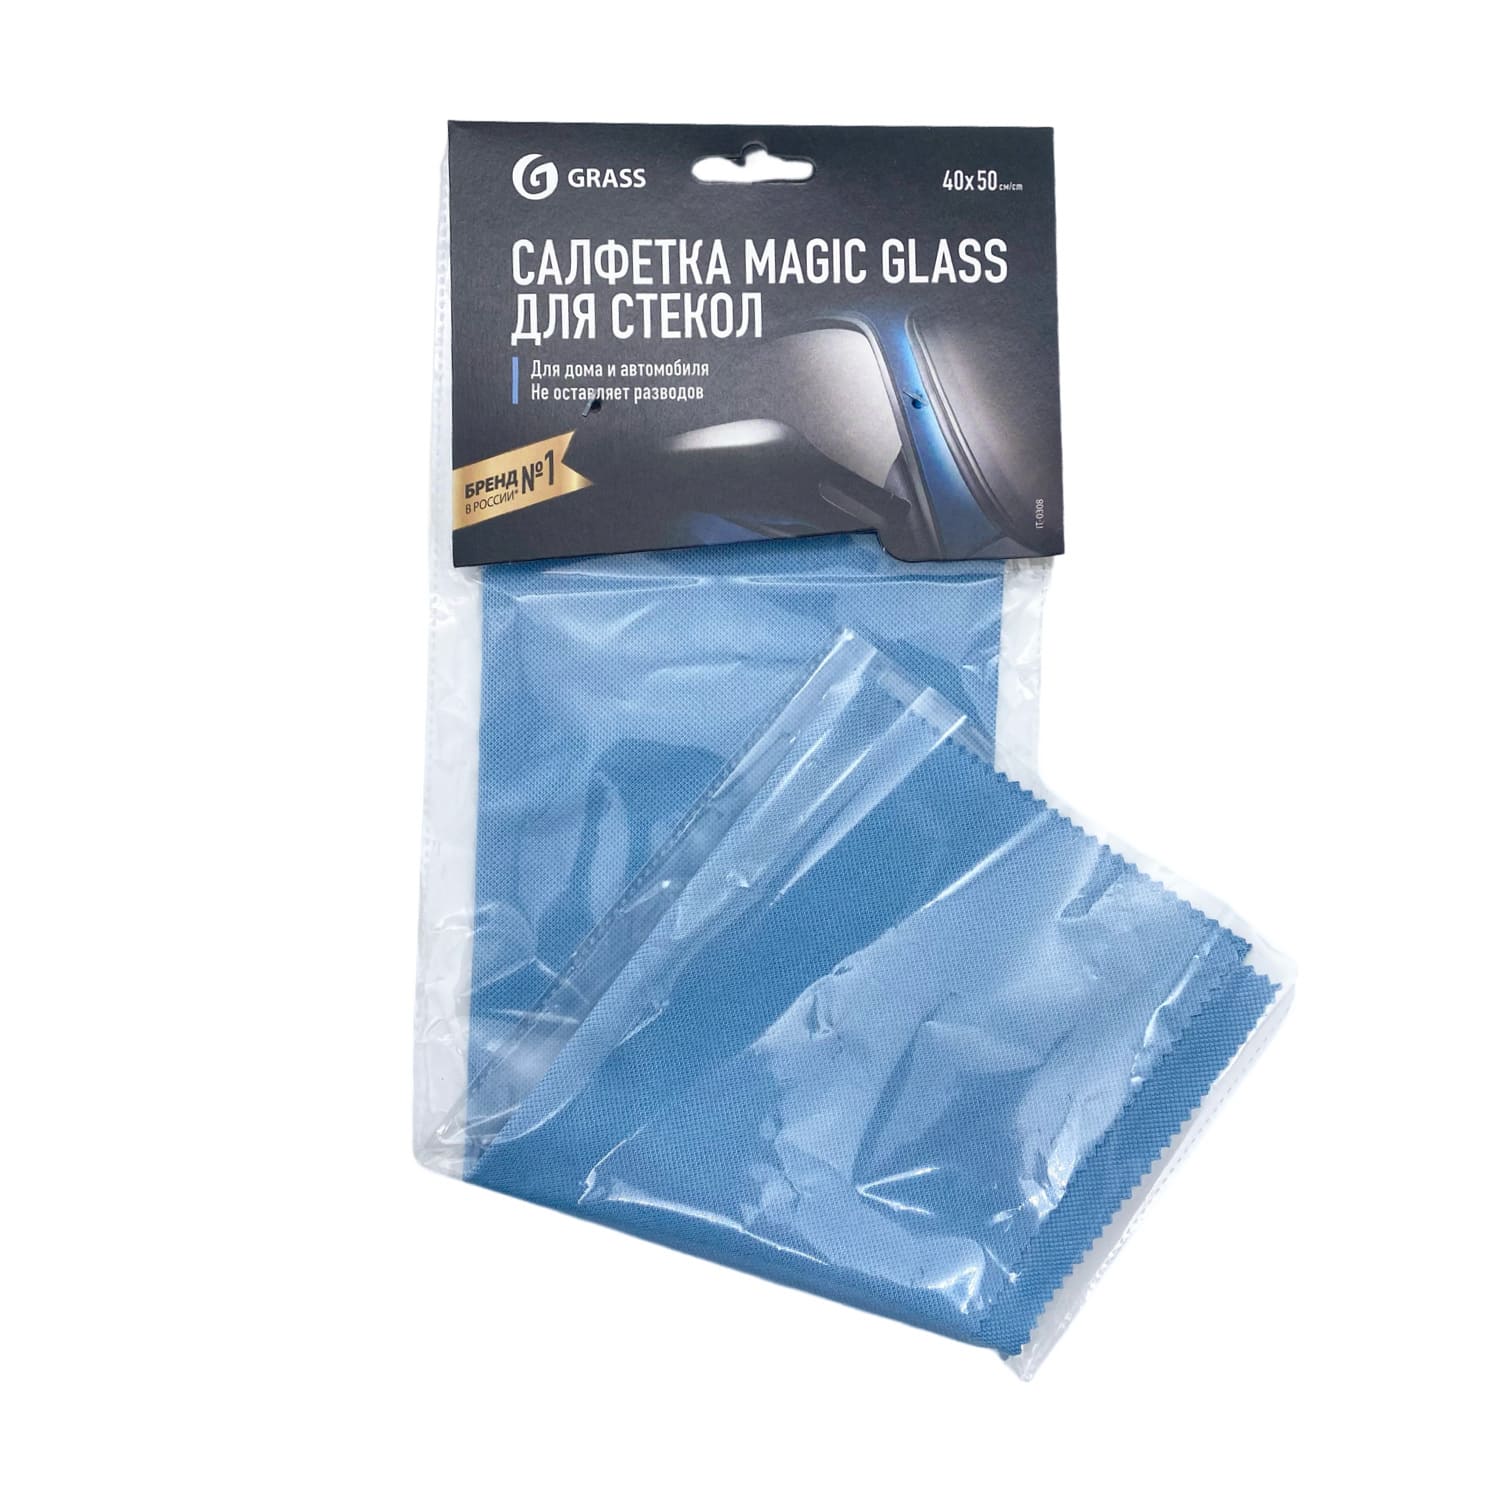 Салфетка из микрофибры для стекол GraSS Magic Glass 40*50 1шт